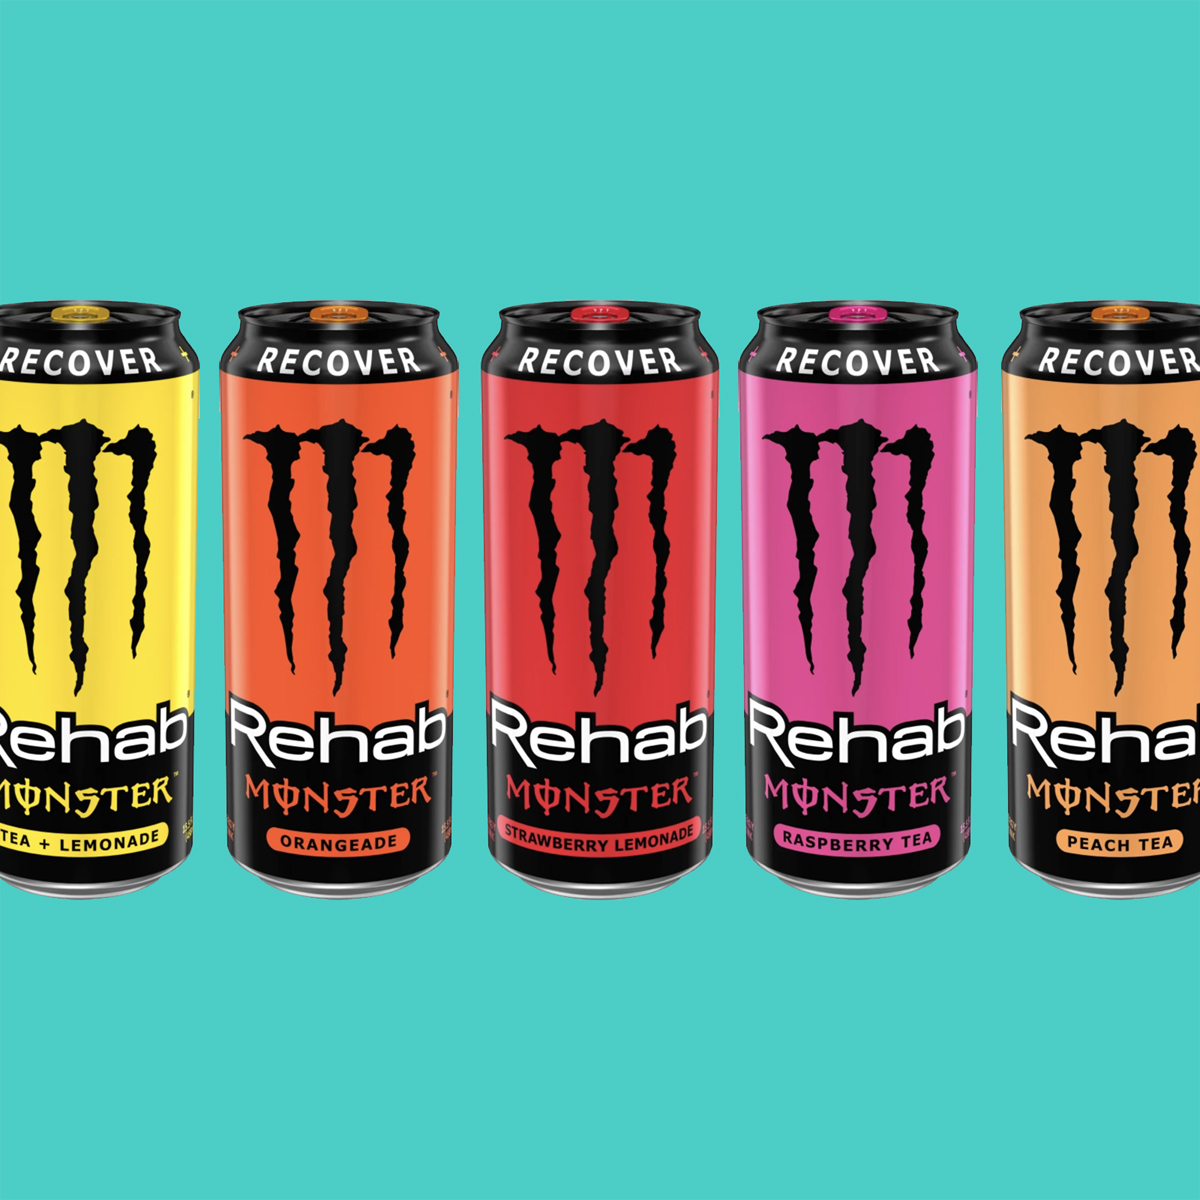 Monster Energy Rehab Monster in various flavors